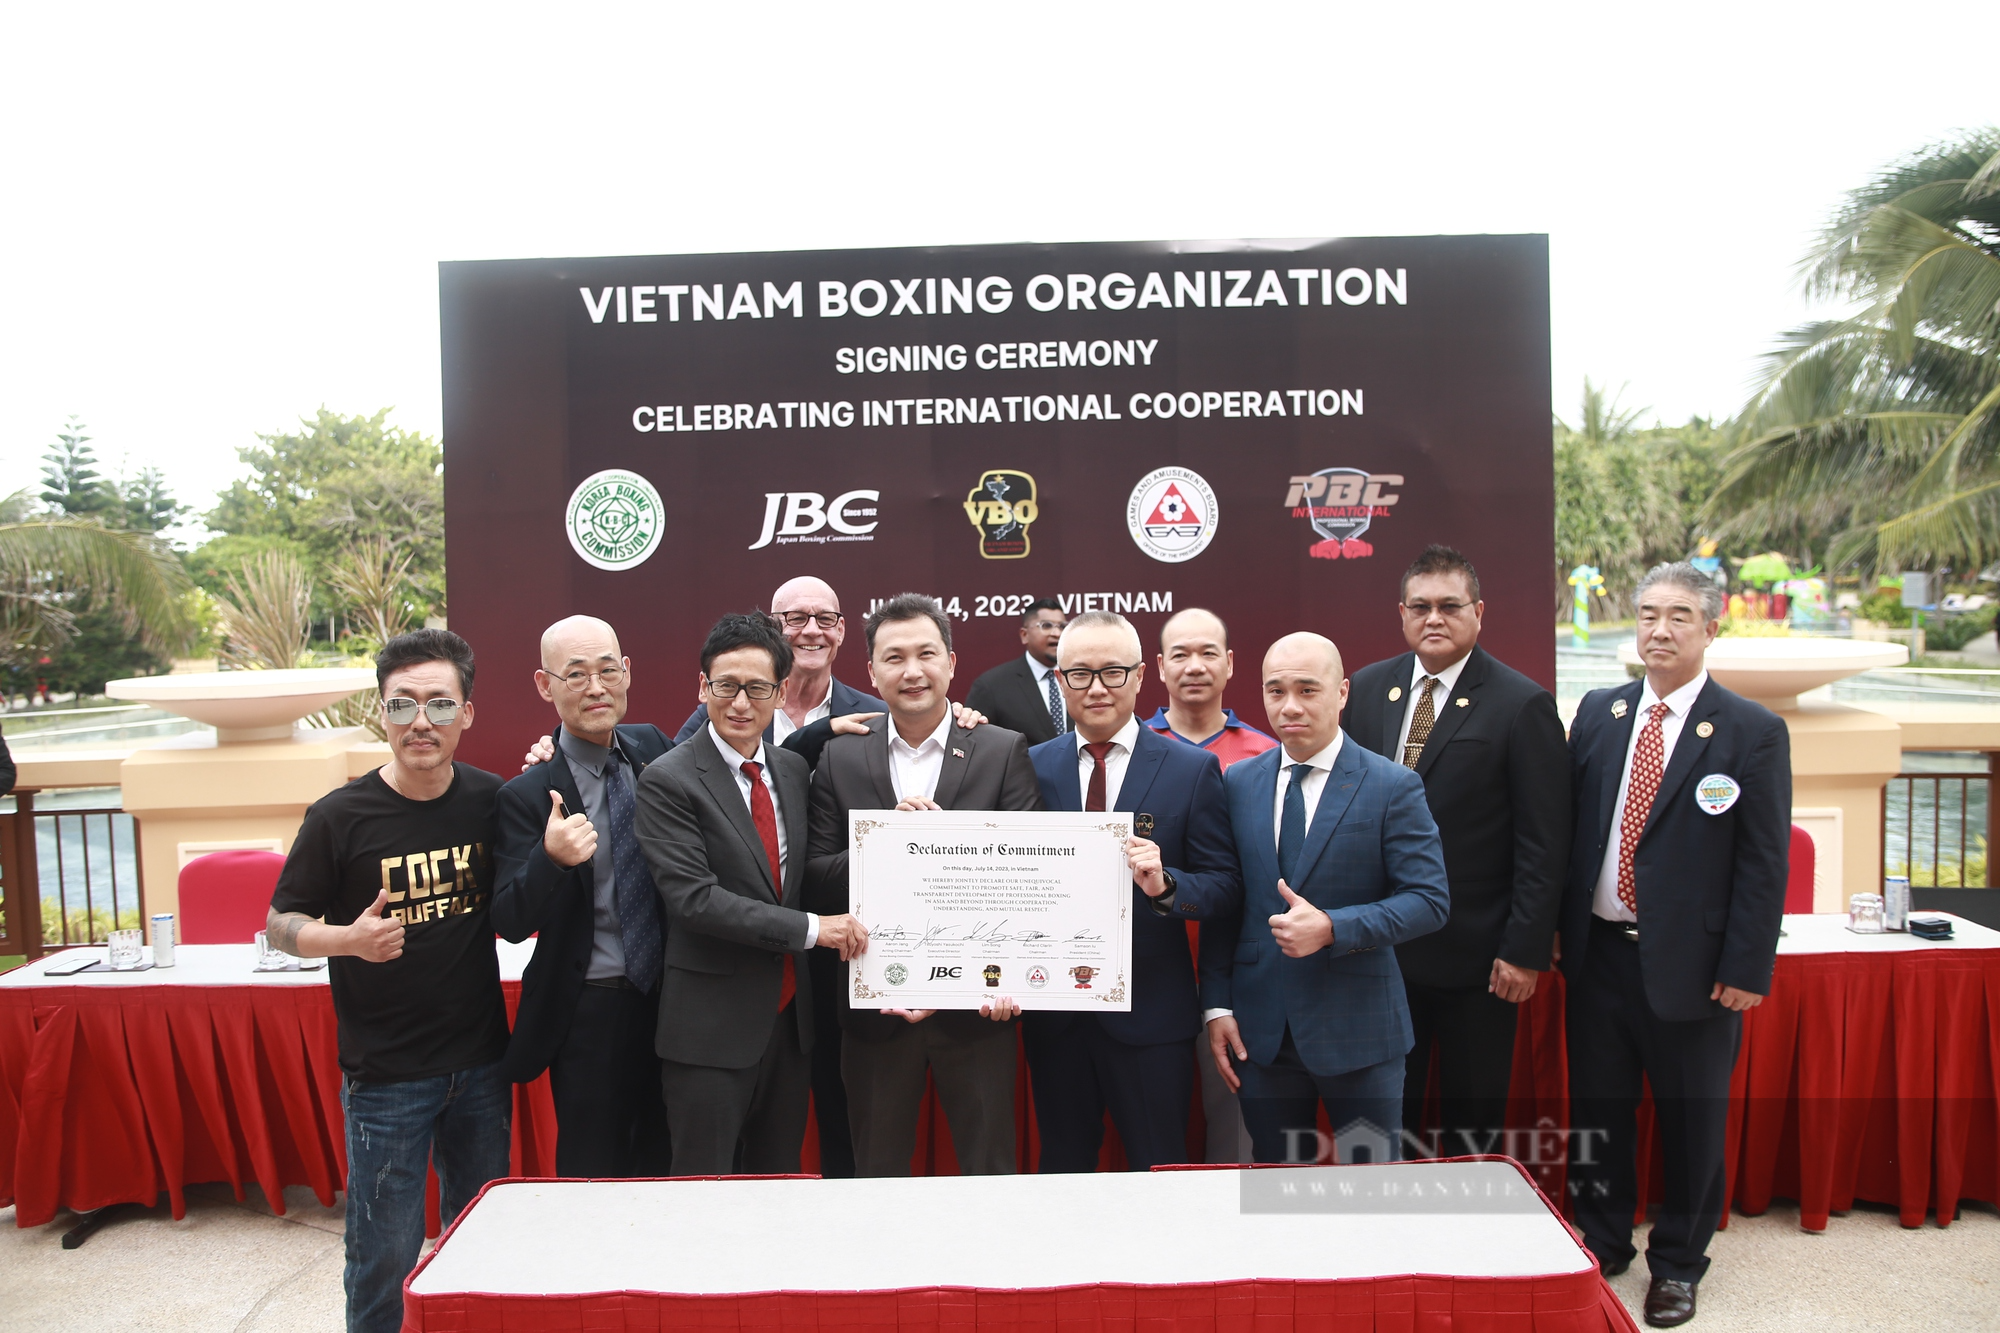 Chính thức thành lập Tổ chức Quyền Anh Việt Nam: Cơ hội của các võ sĩ chuyên nghiệp - Ảnh 1.